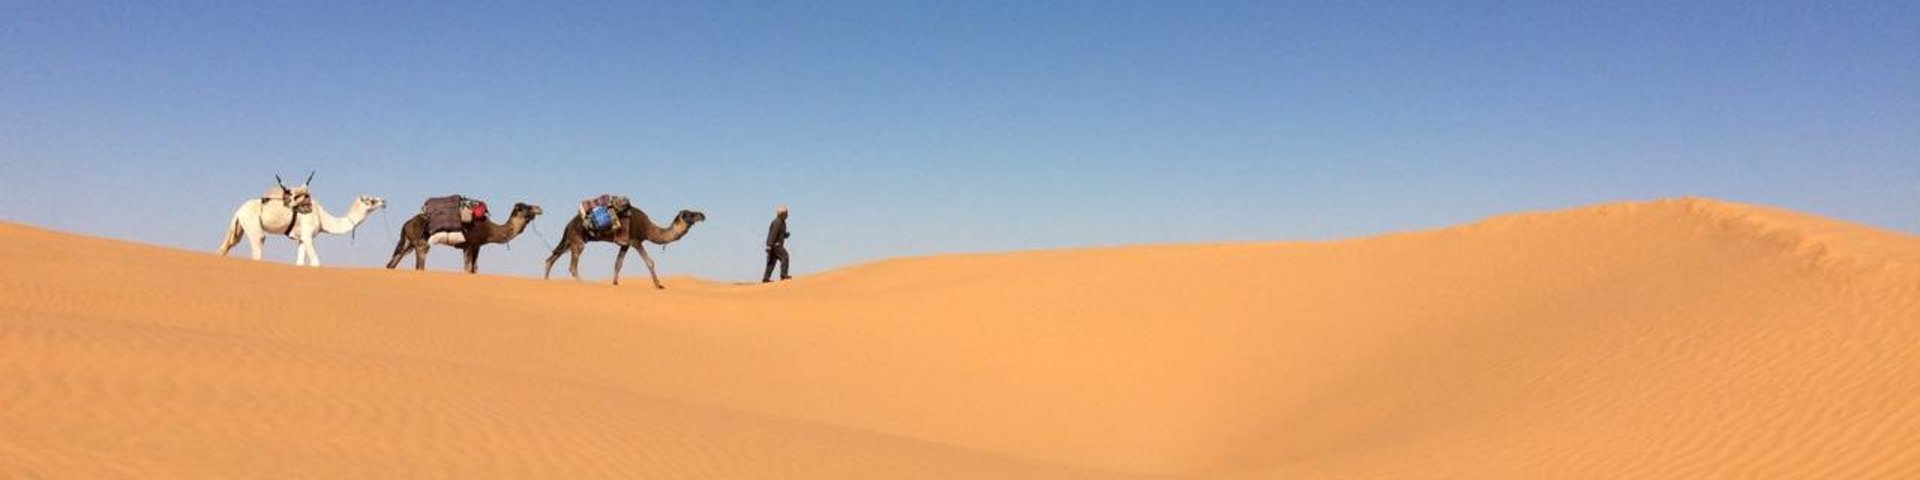 Kamele auf einer Sanddüne in Tunesien